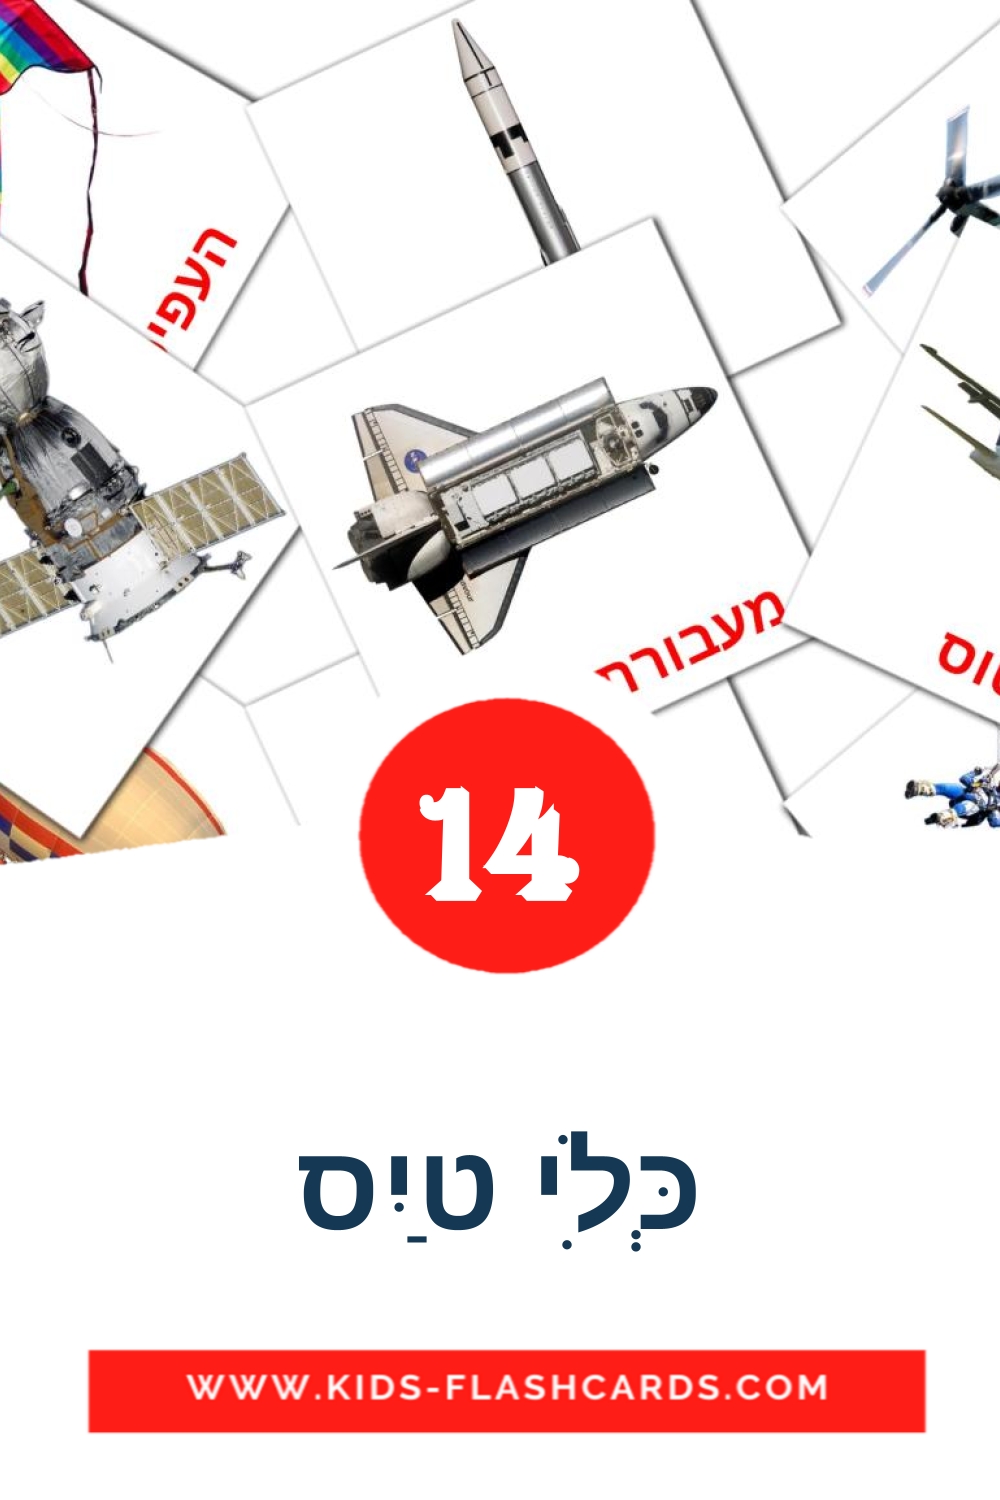 14 carte illustrate di כְּלִי טַיִס per la scuola materna in ebraico